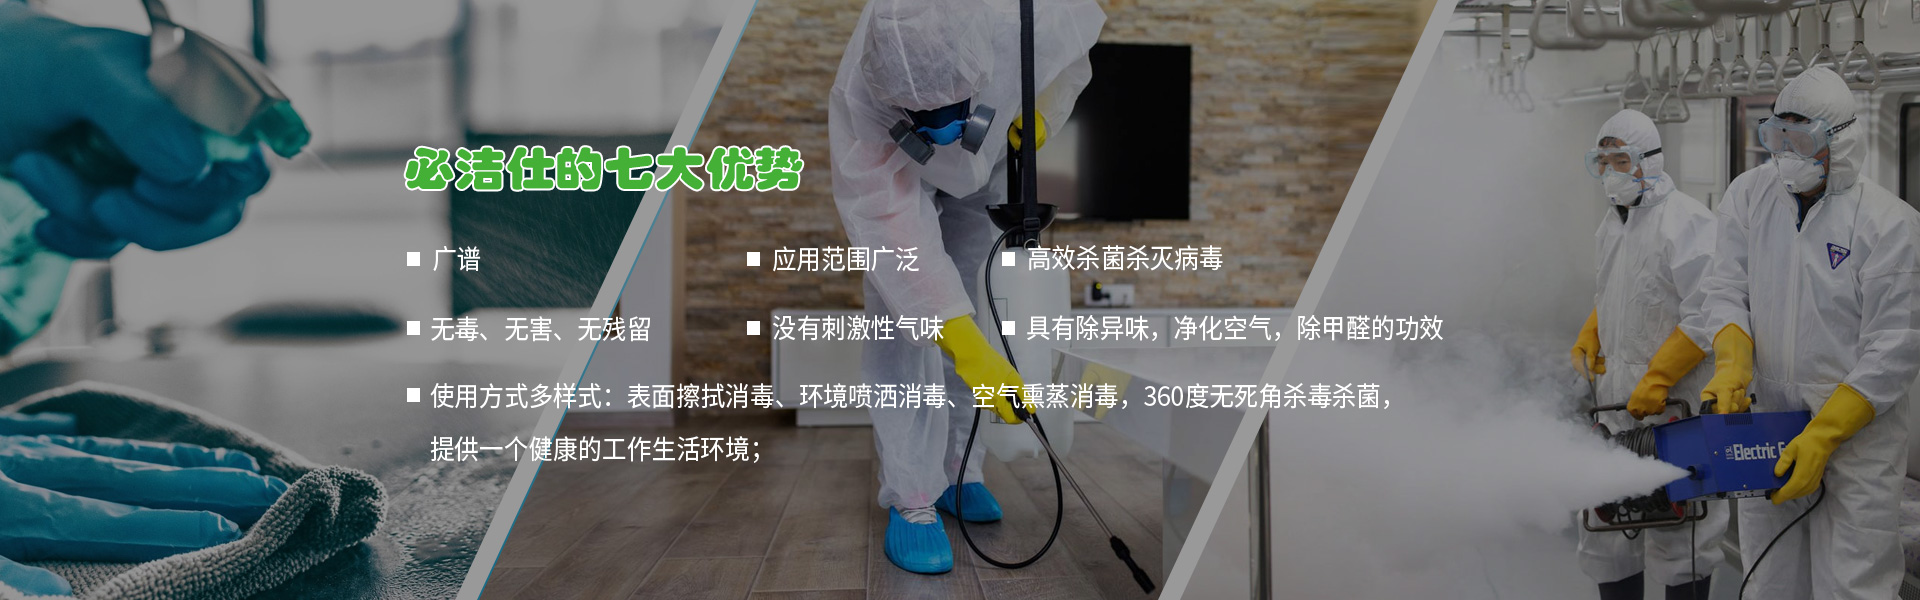 北京消毒劑、空氣消毒劑、二氧化氯消毒劑、冷鏈消毒劑、消毒劑、環境消毒液ban3